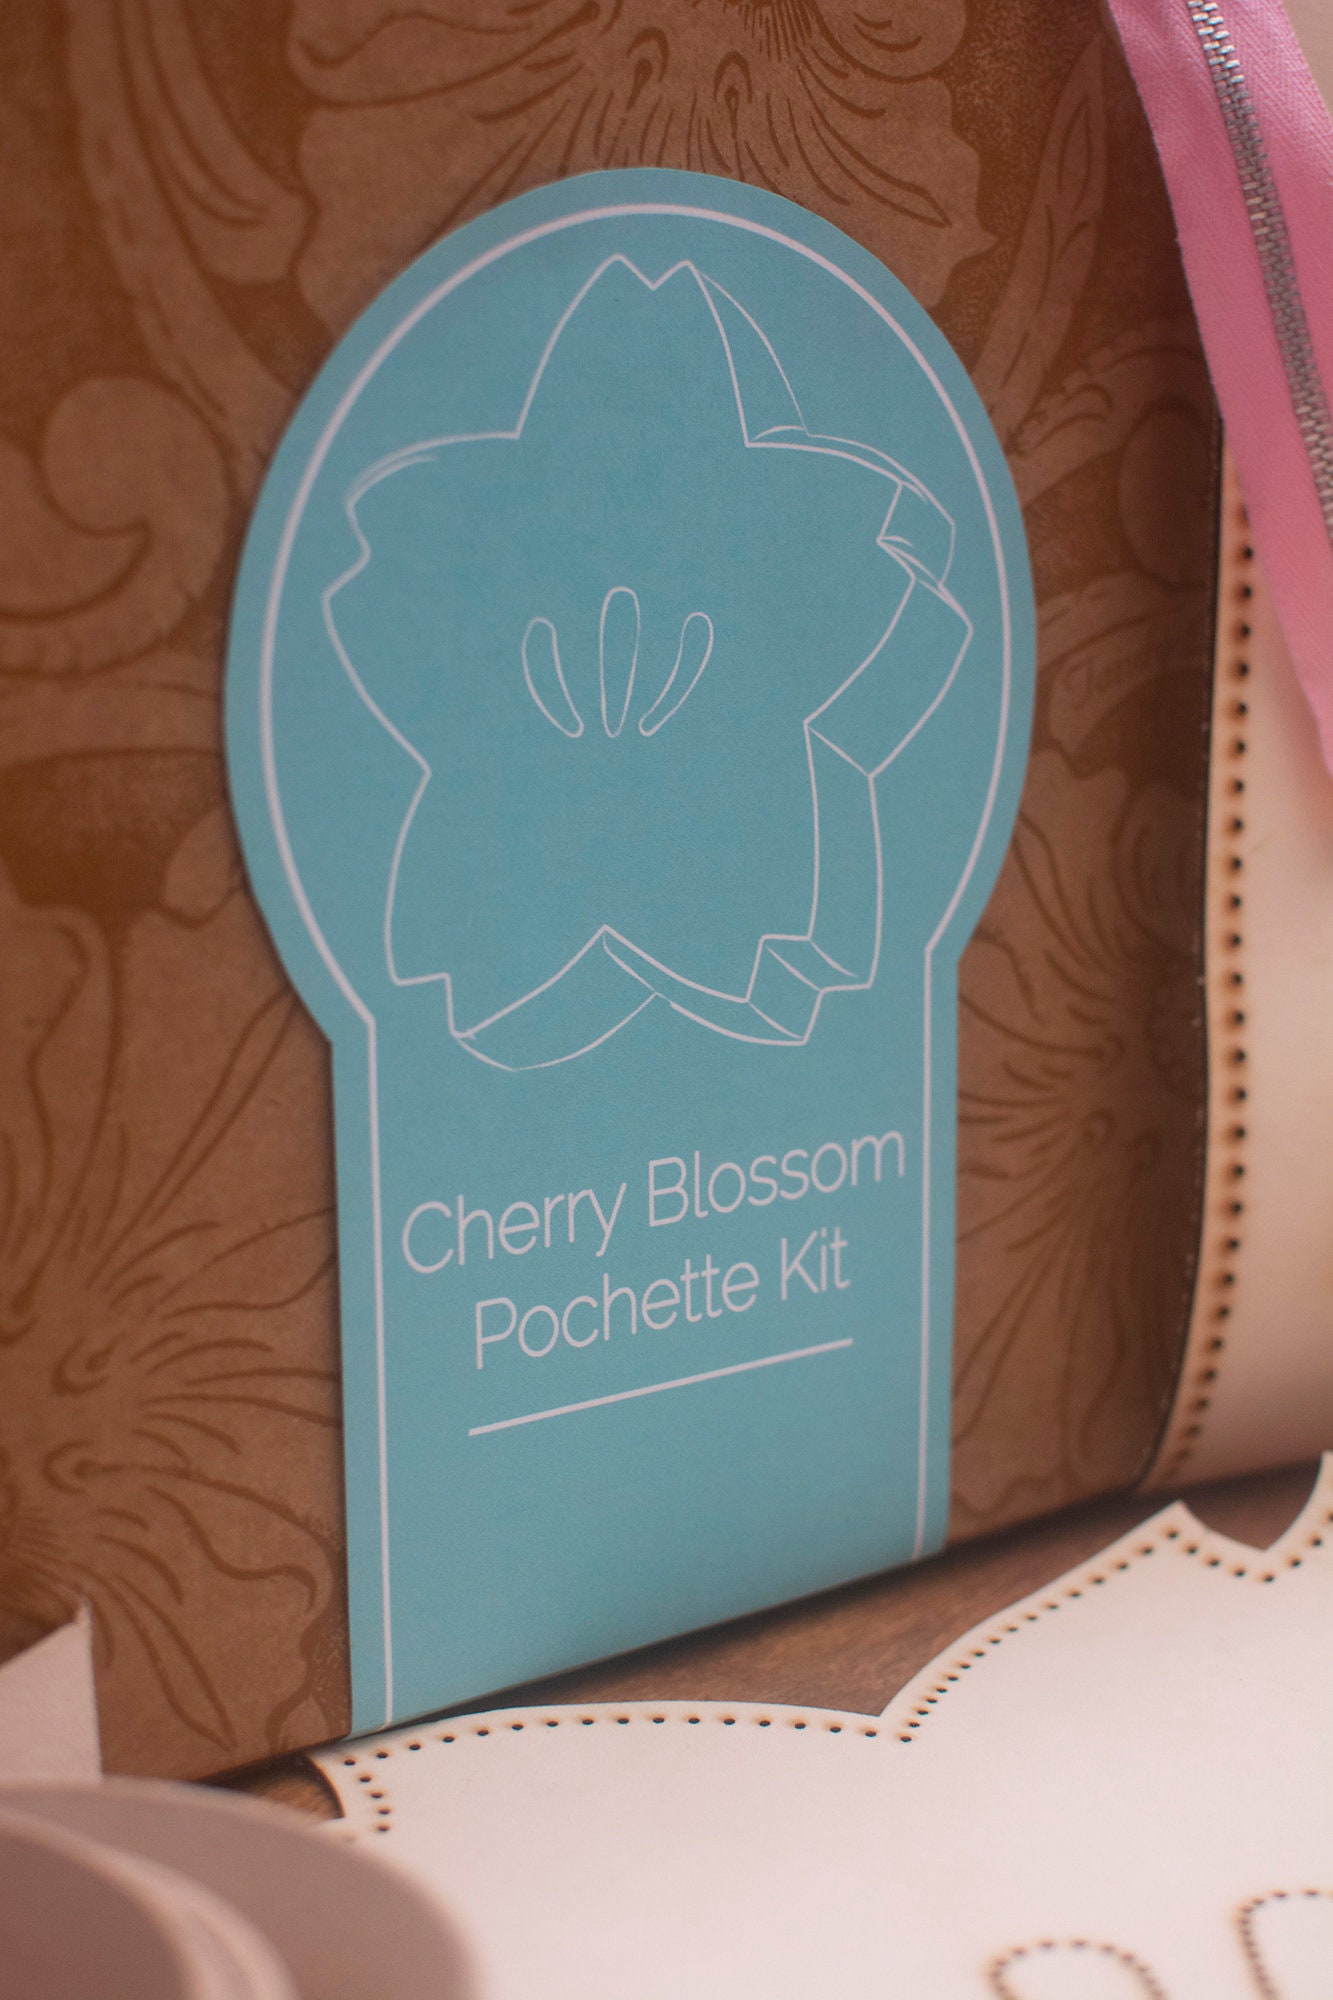 Made to Order, Animal Crossing Inspired Cherry Blossom Pochette Sakura  Crossbody Bag，Gift